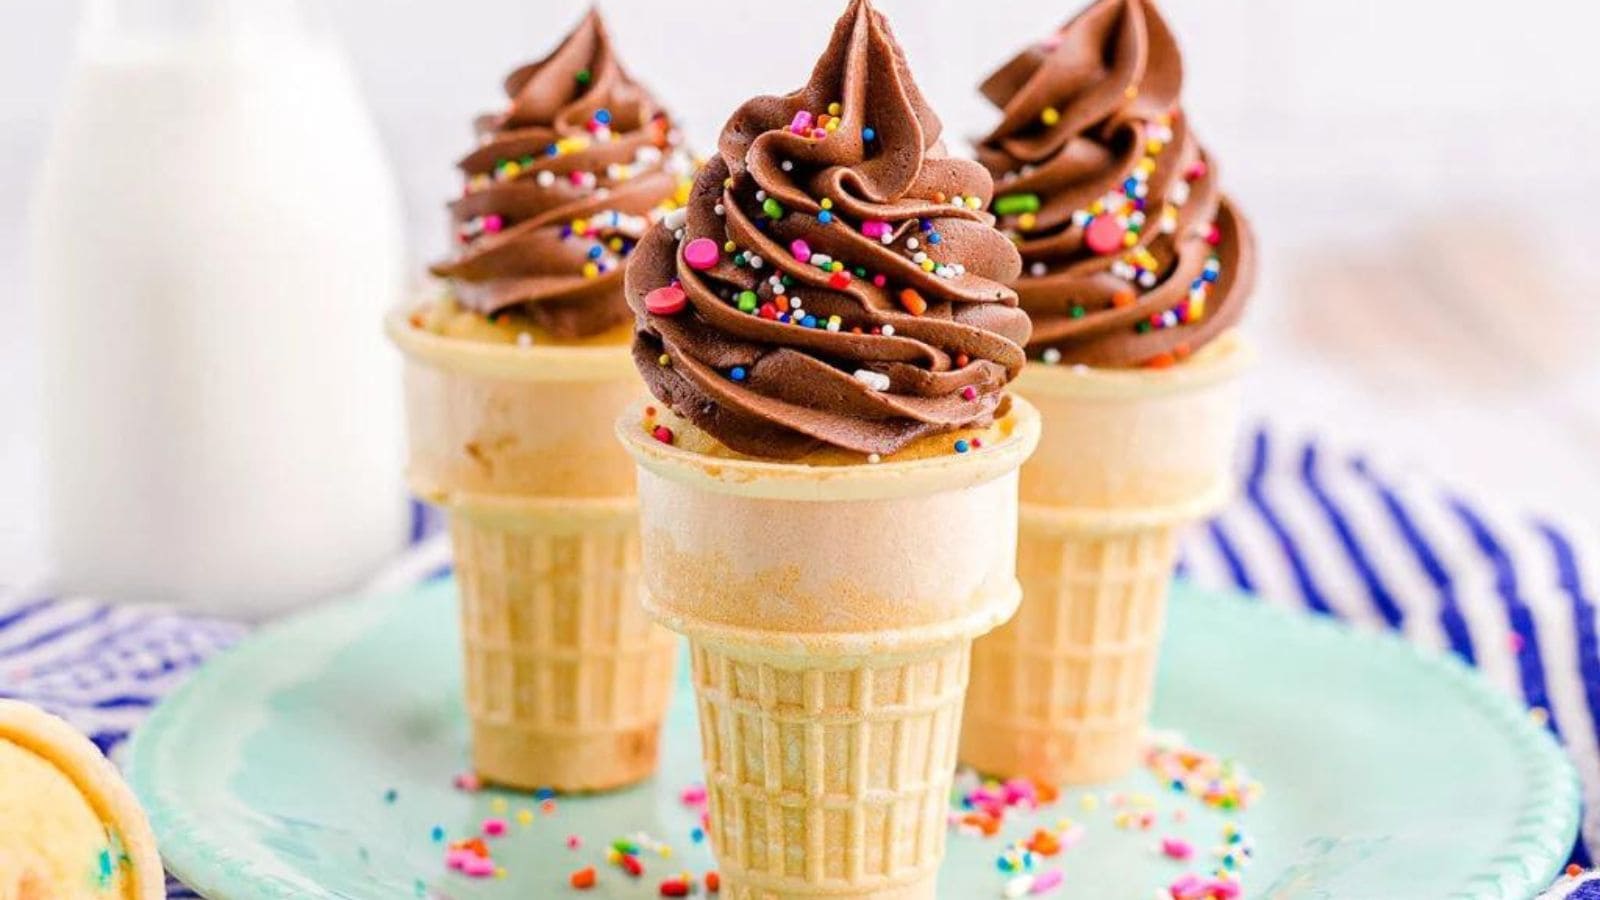 Funfetti Ice Cream Cone Cupcakes recipe by xoxoBella.